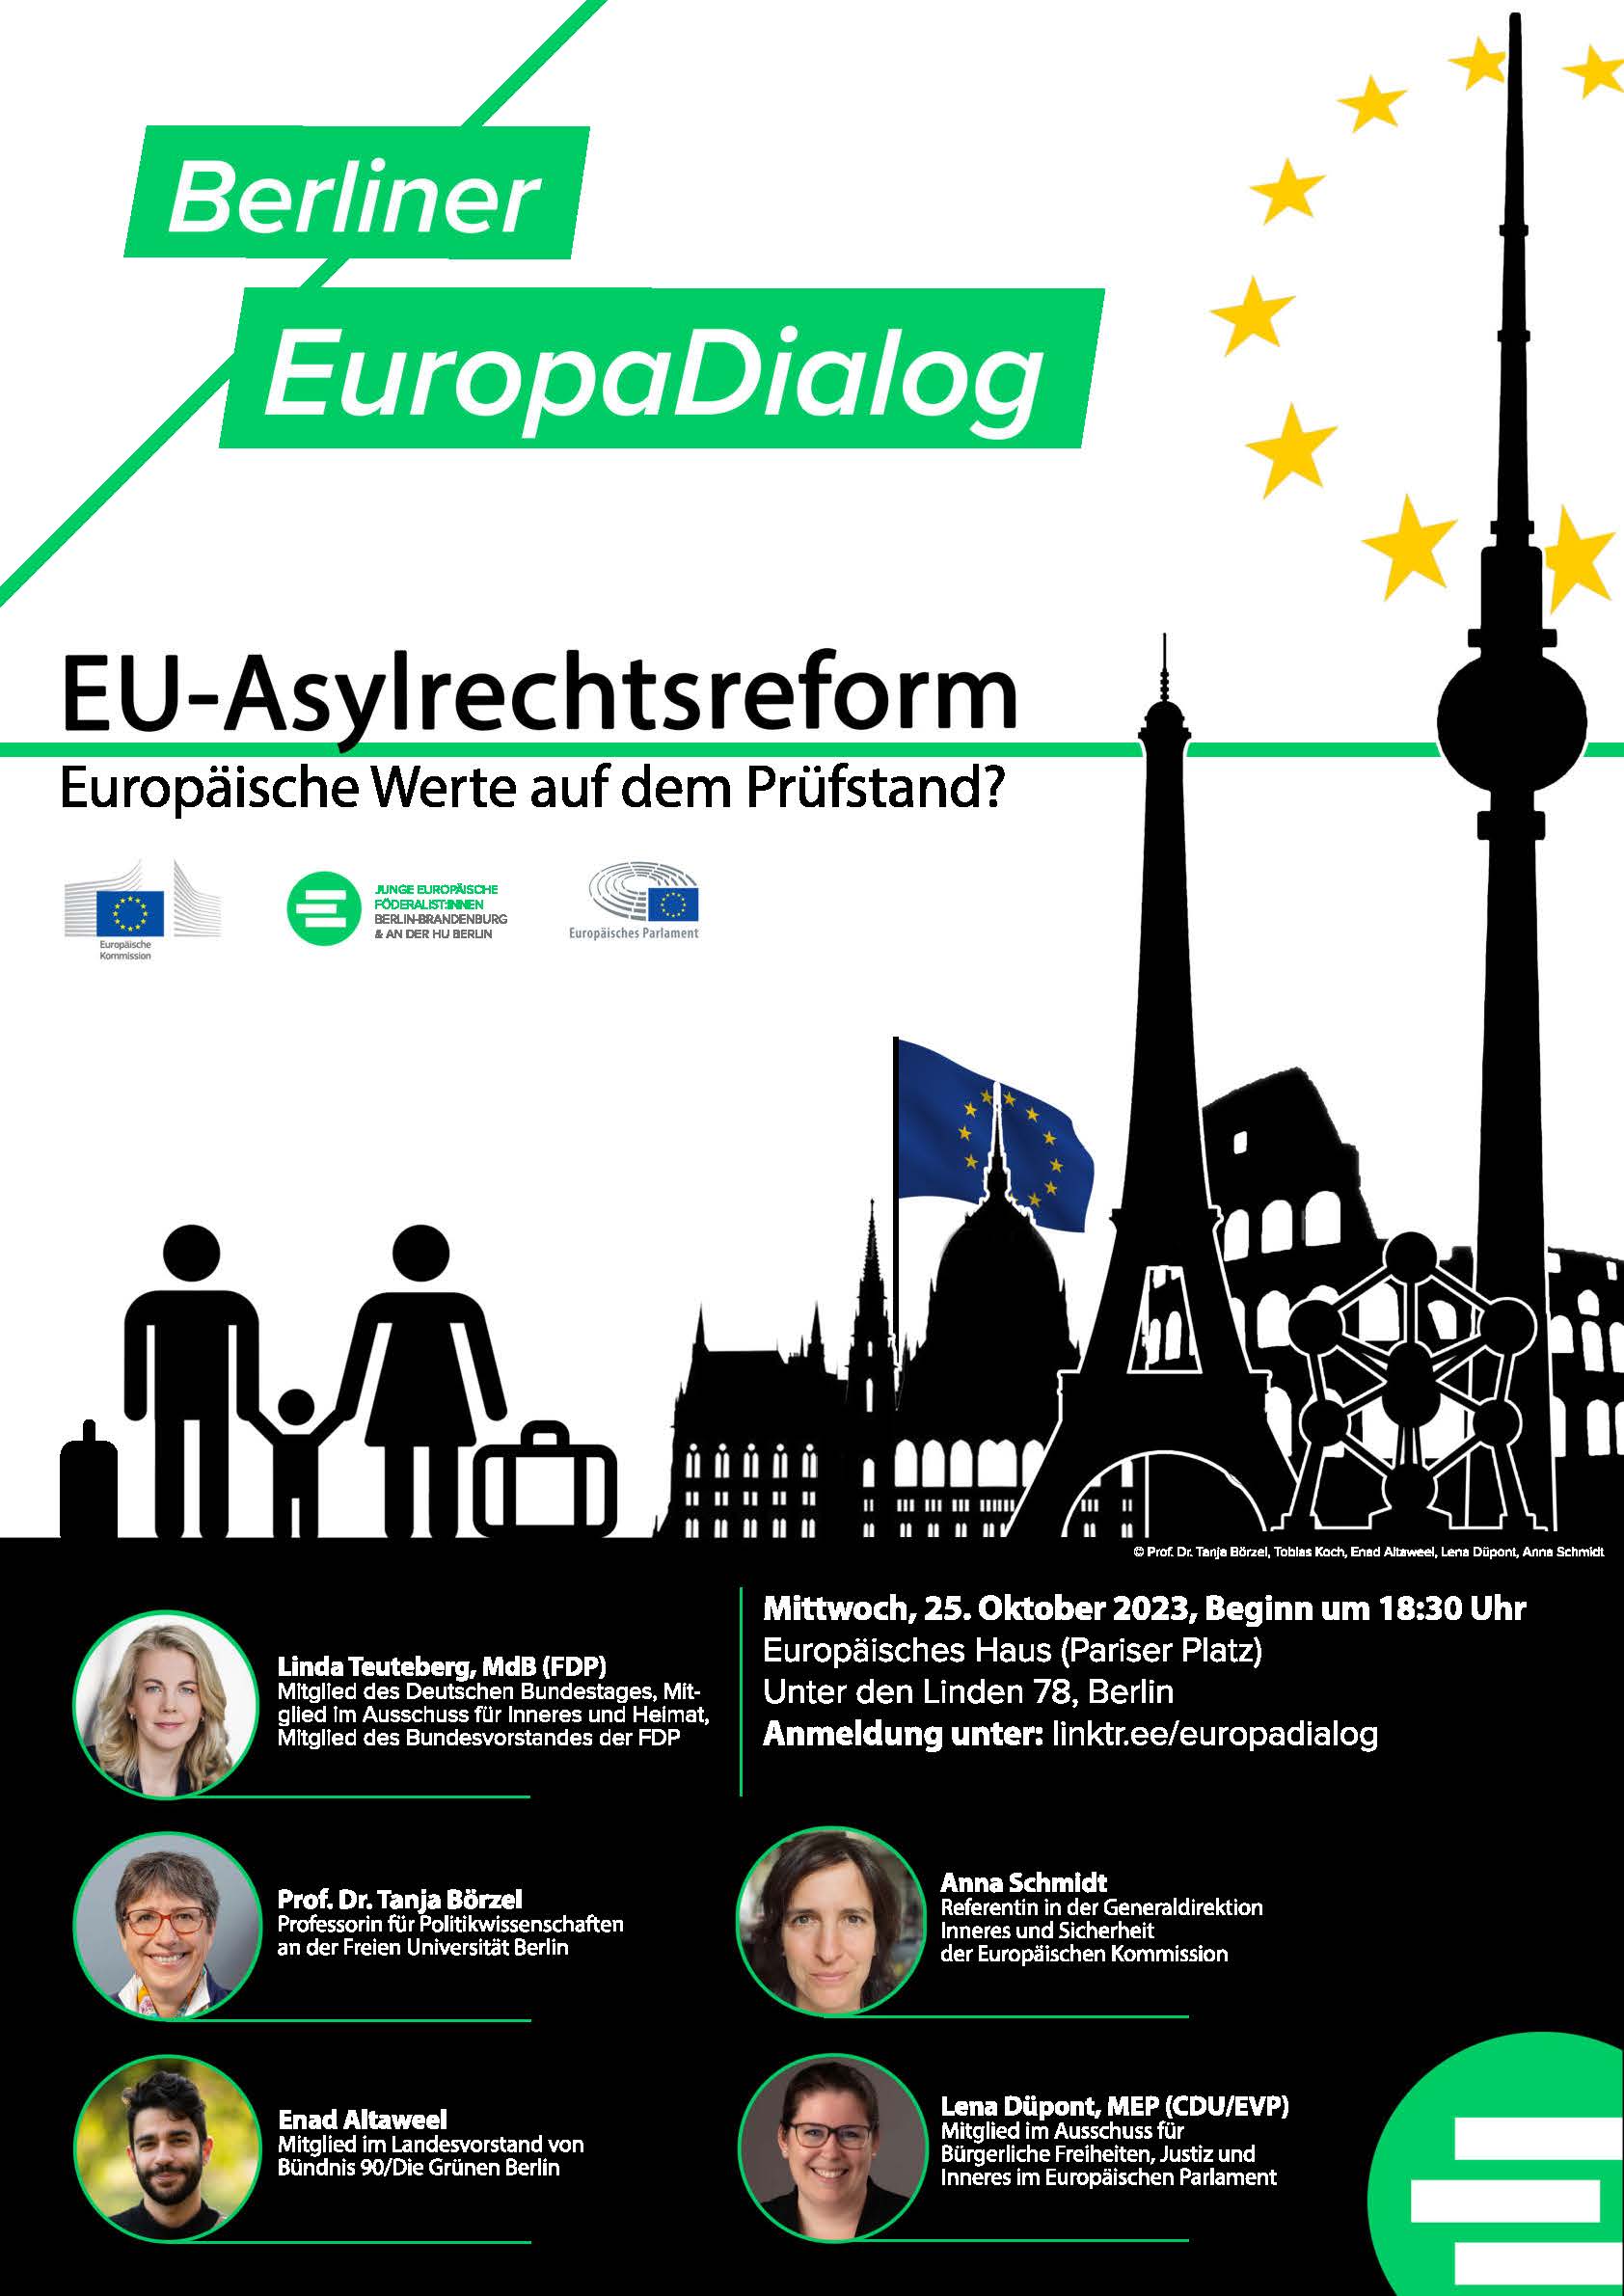 EuropaDialog: EU-Asylrechtsreform - Europas Werte auf dem Prüfstand? Paneldiskussion mit Abgeordneten und Expert*innen in Berlin